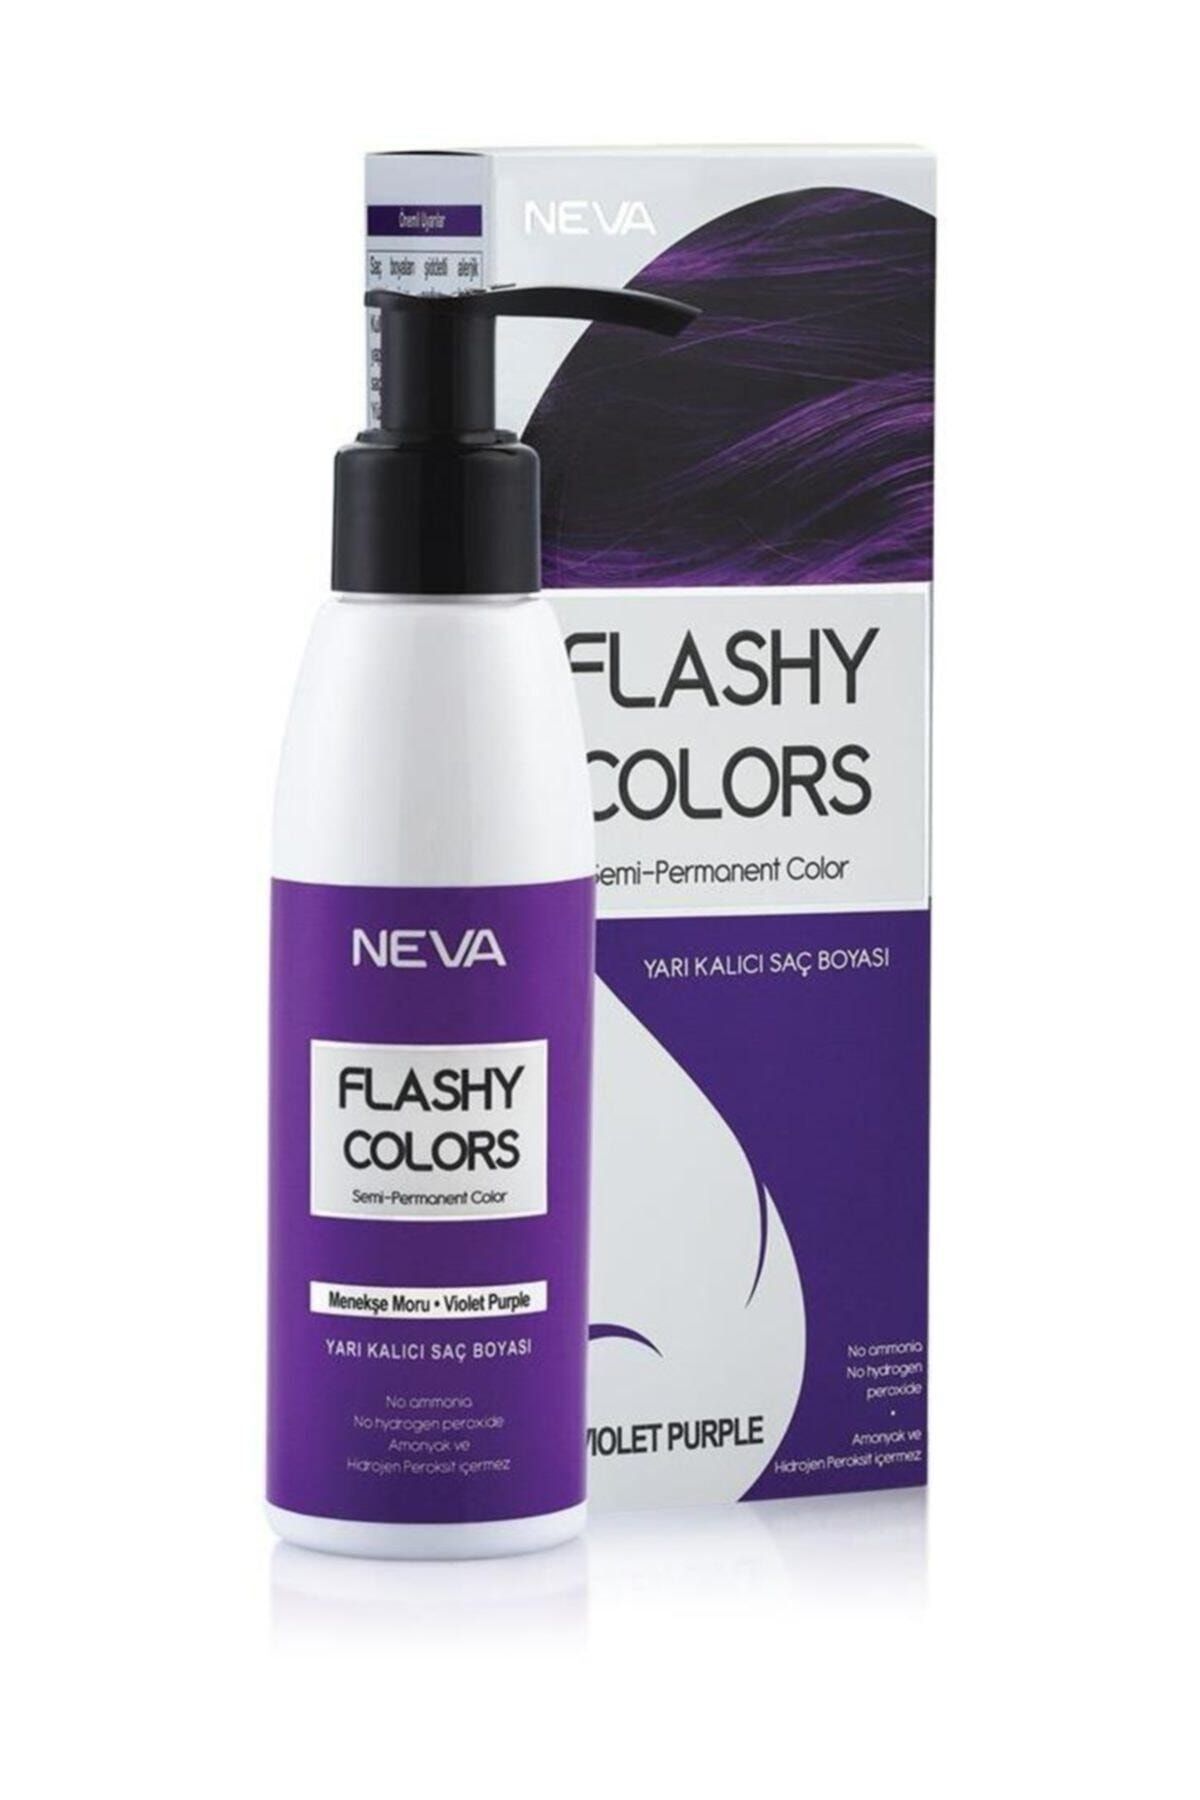 Flashy Colors Yarı Kalıcı Saç Boyası - Violet Purple / Menekşe Moru 100 ml